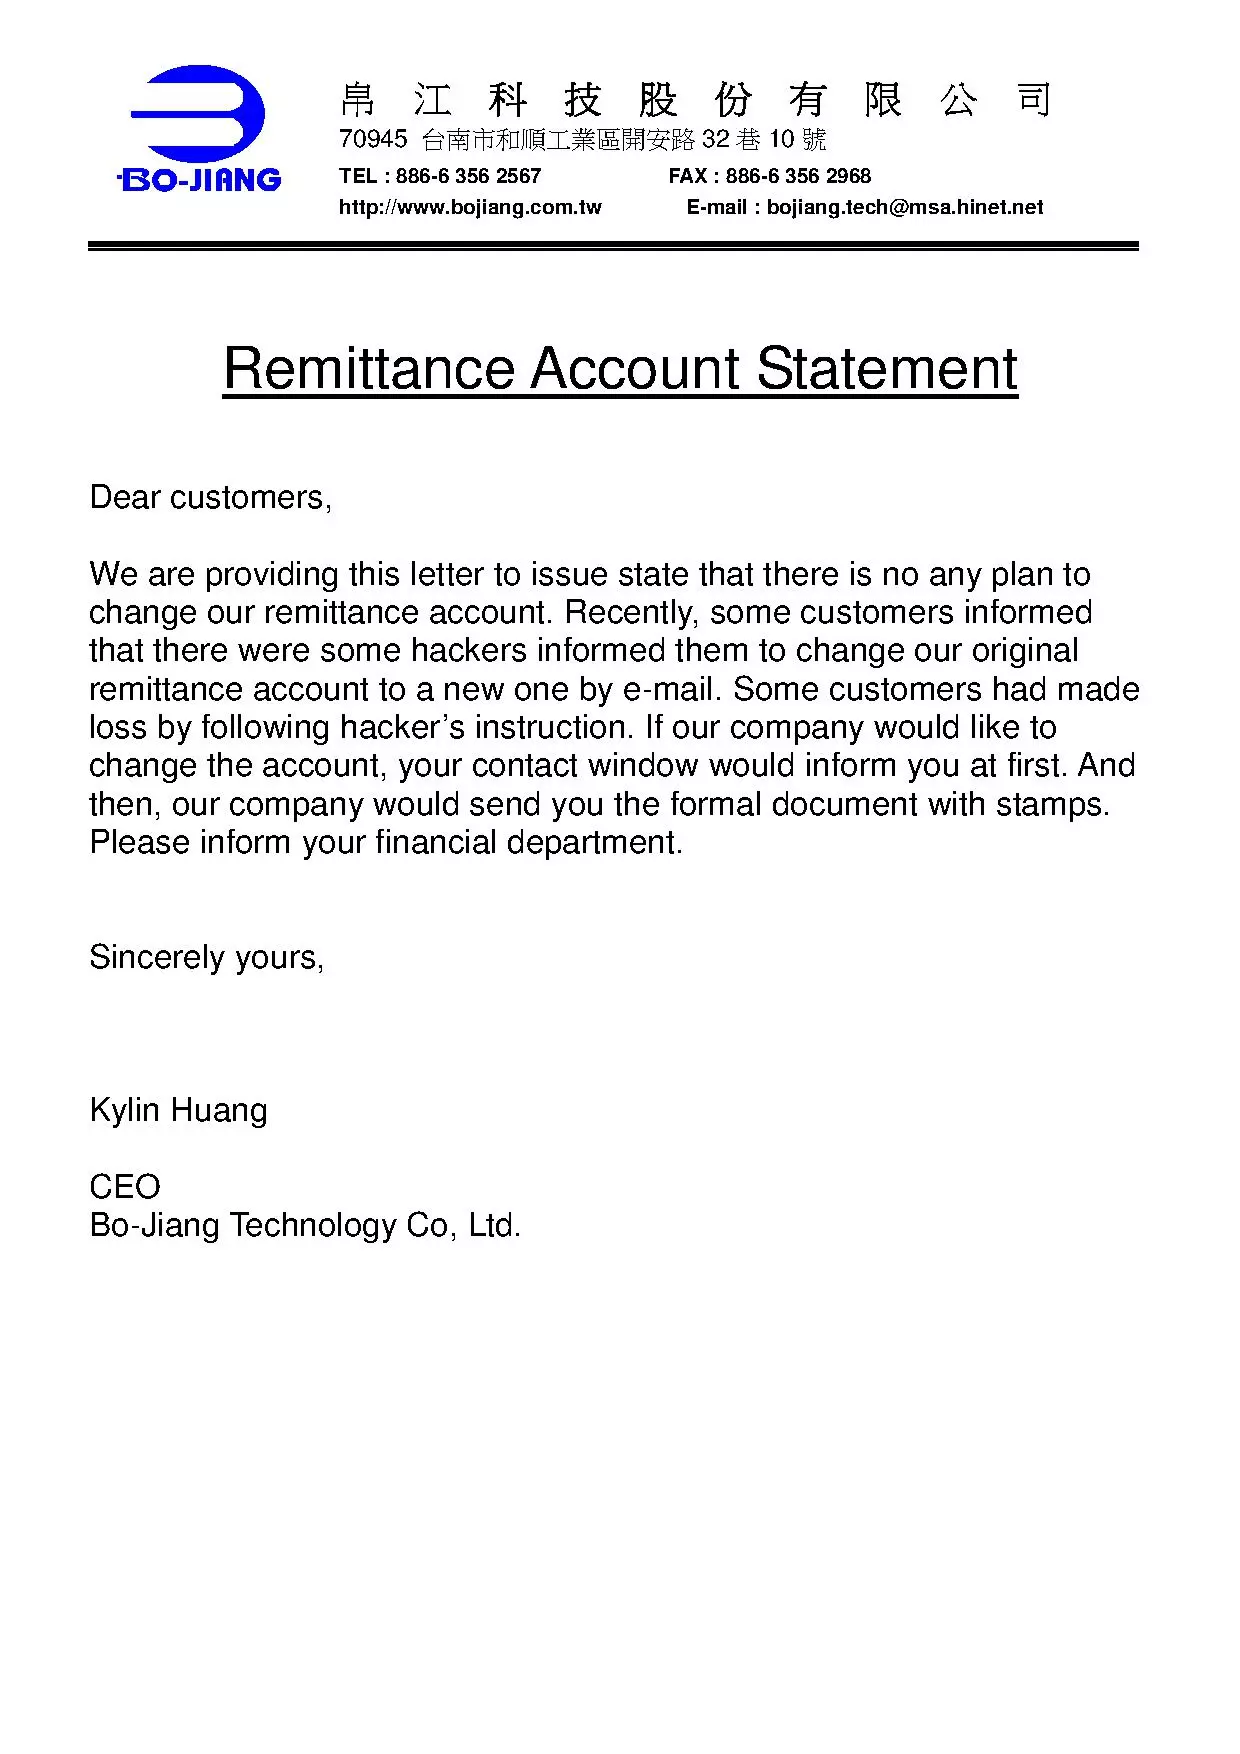 Remittance Account Statement